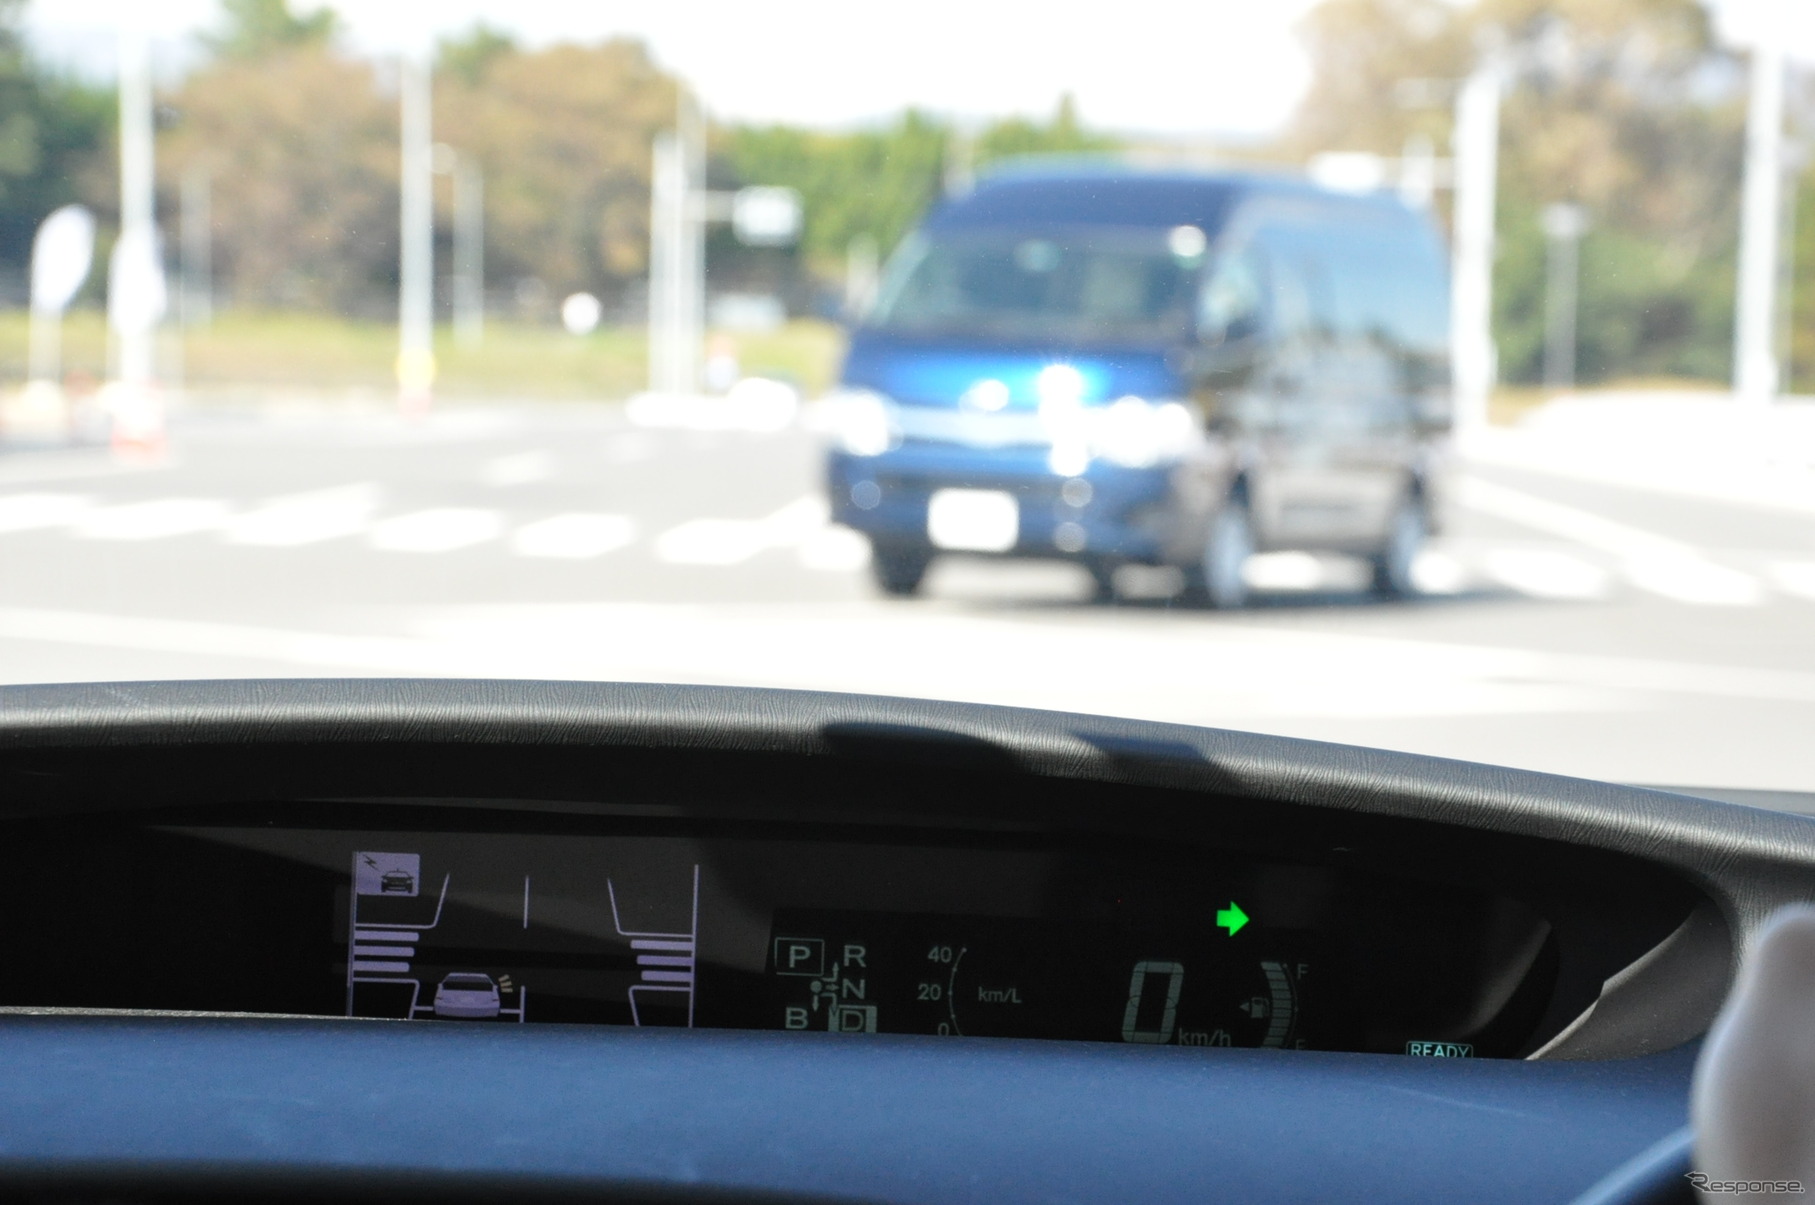 インストルメントパネルにある速度表示の隣に、車両周辺の交通環境が表示された